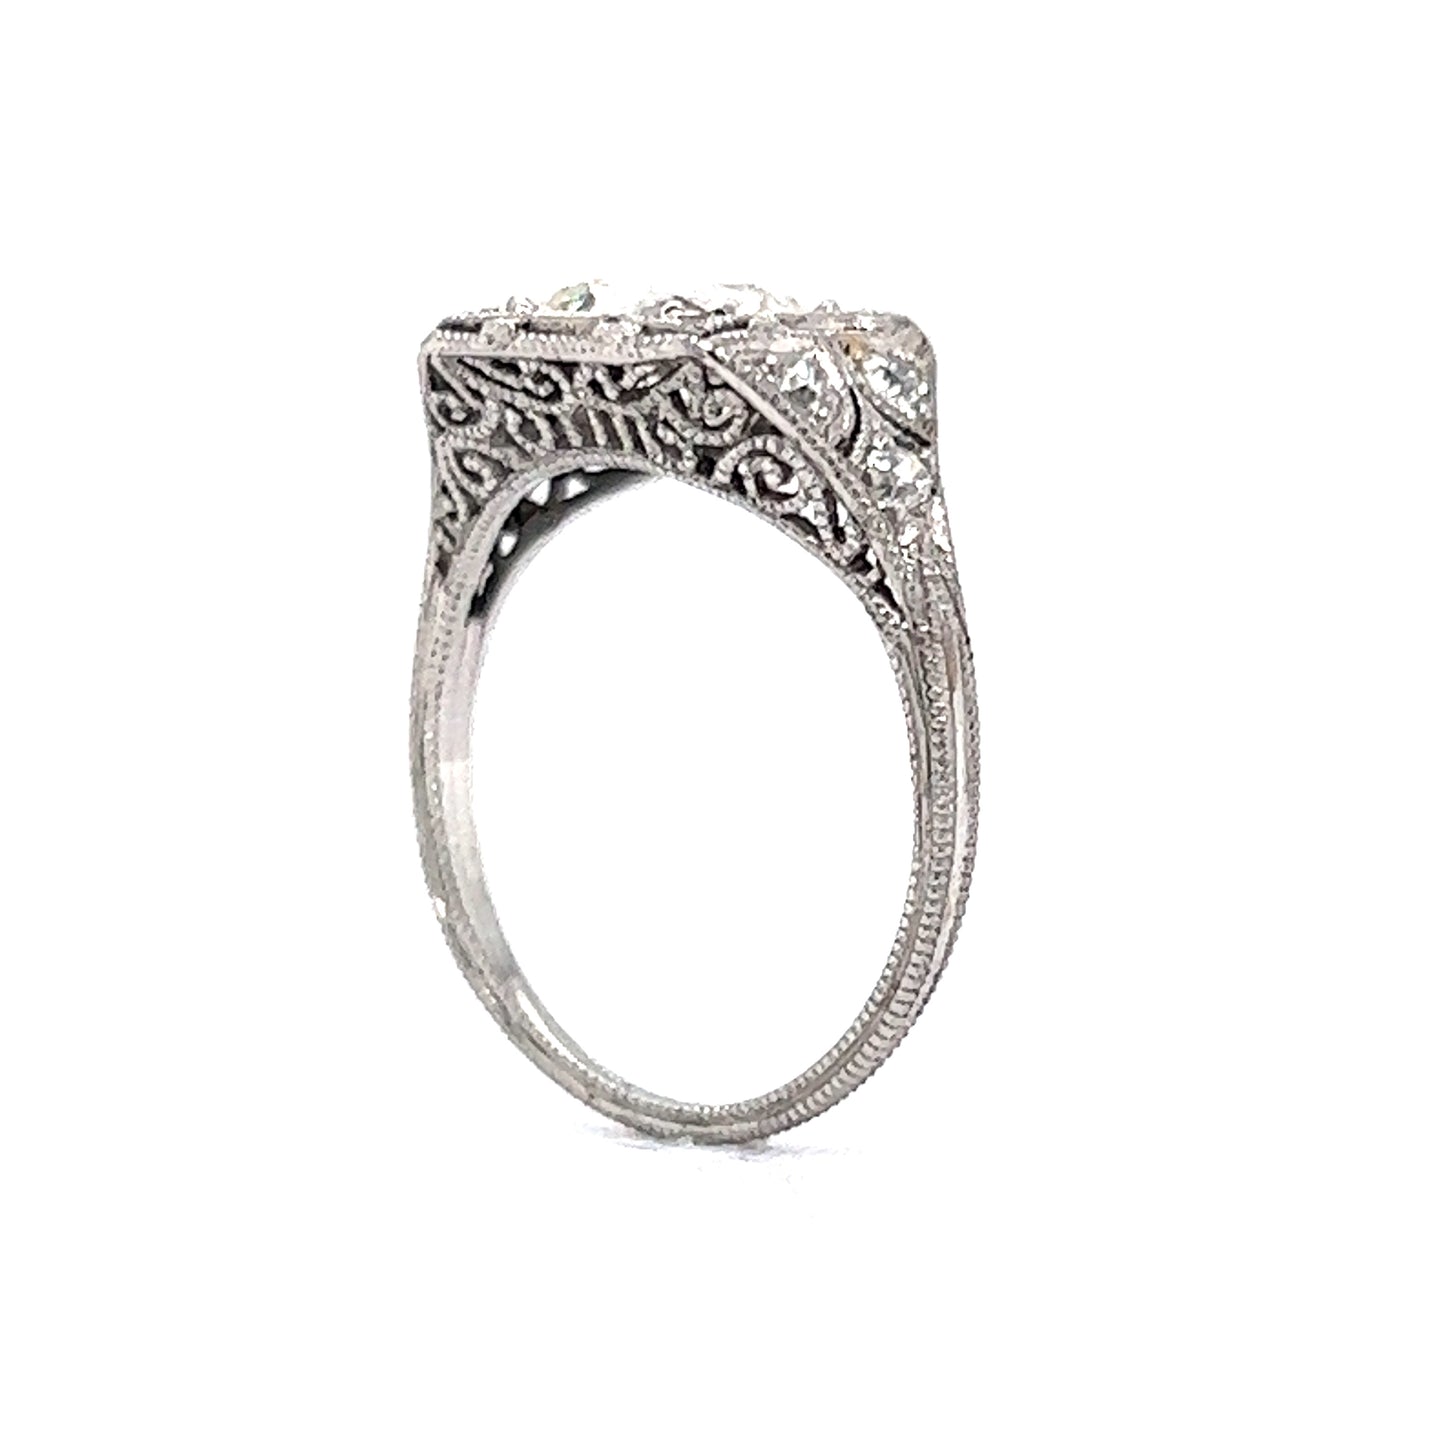 1.57 Antique Art Deco Diamond Engagement Ring in Platinum